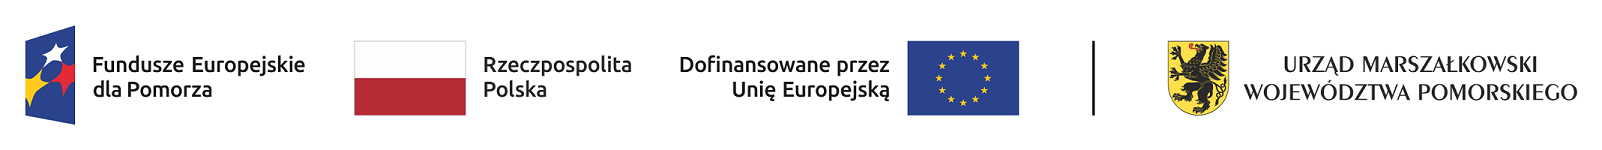 Logo Fundusze Europejskie dla Pomorza, Rzeczpospolita Polska, Dofinansowane przez Unię Europejską, Urząd Marszałkowski Województwa Pomorskiego